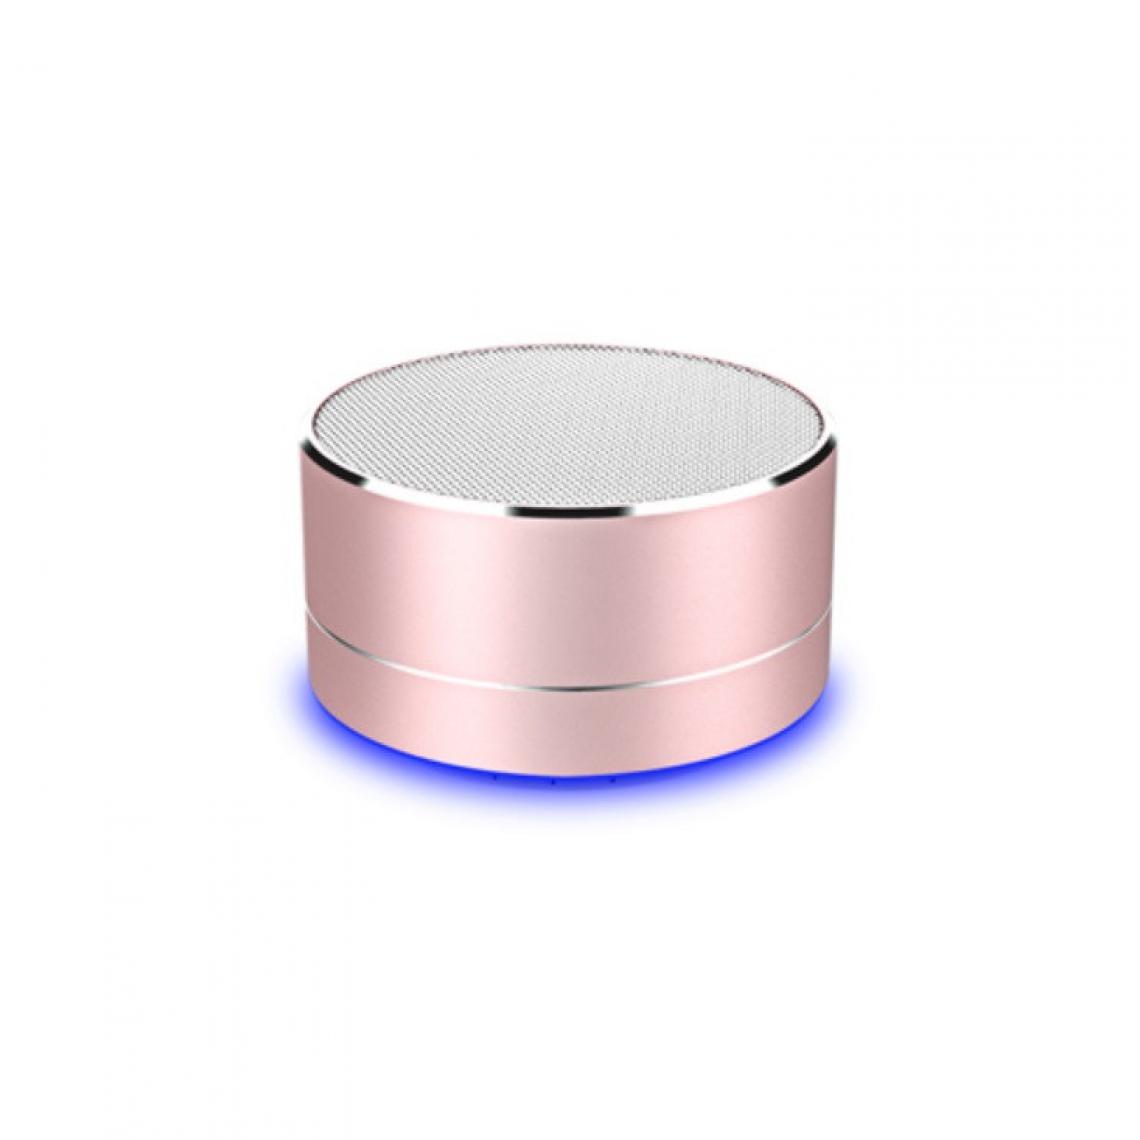 Shot - Enceinte Metal Bluetooth pour ALCATEL 1 2019 Smartphone Port USB Carte TF Auxiliaire Haut-Parleur Micro Mini (ROSE) - Autres accessoires smartphone